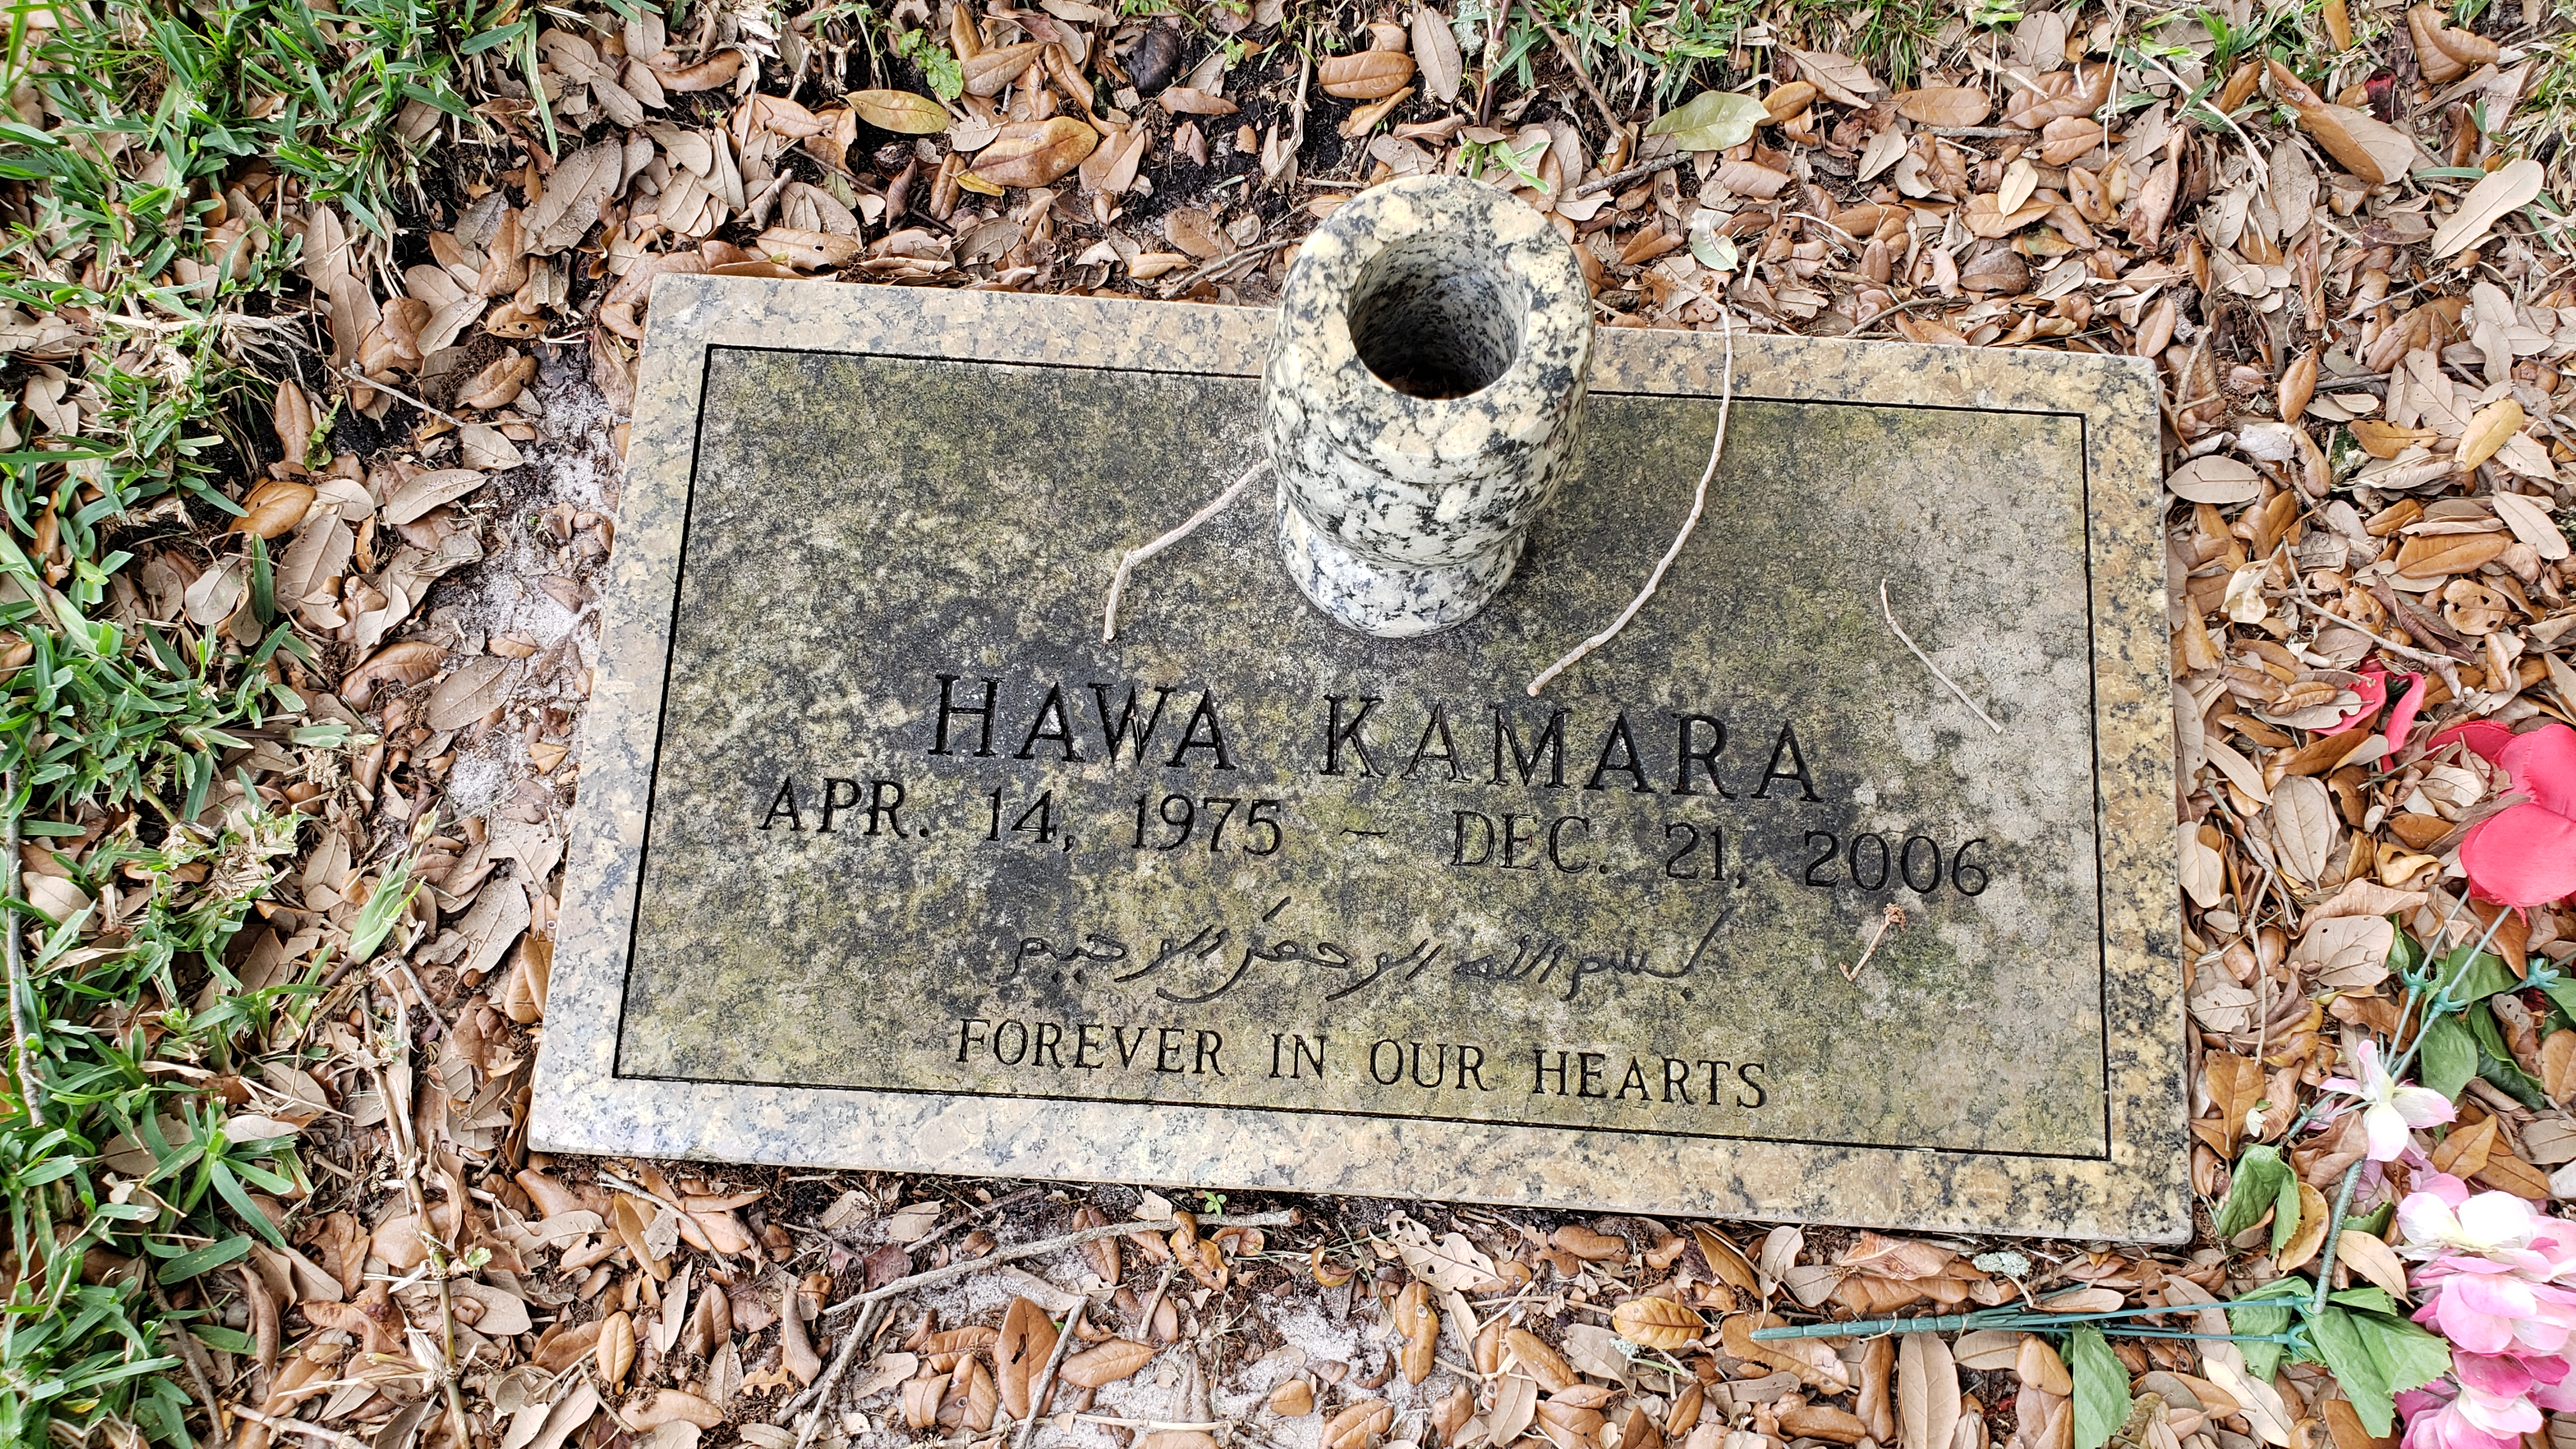 Hawa Kamara